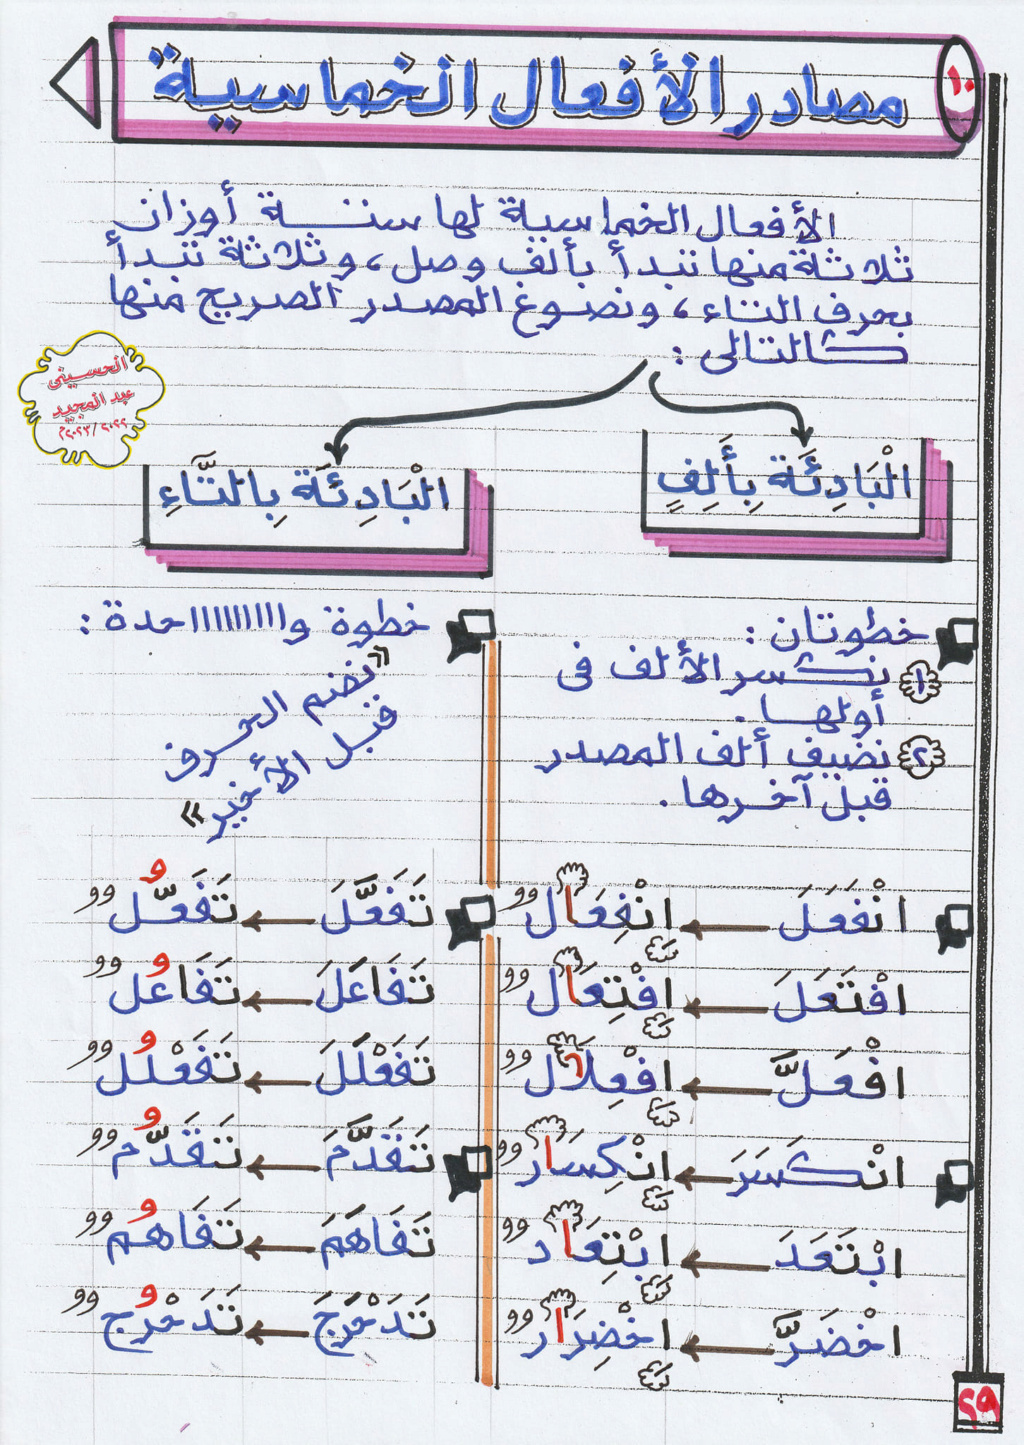  أنواع المصادر  (انفوجراف) أ/ الحسيني عبدالمجيد 844